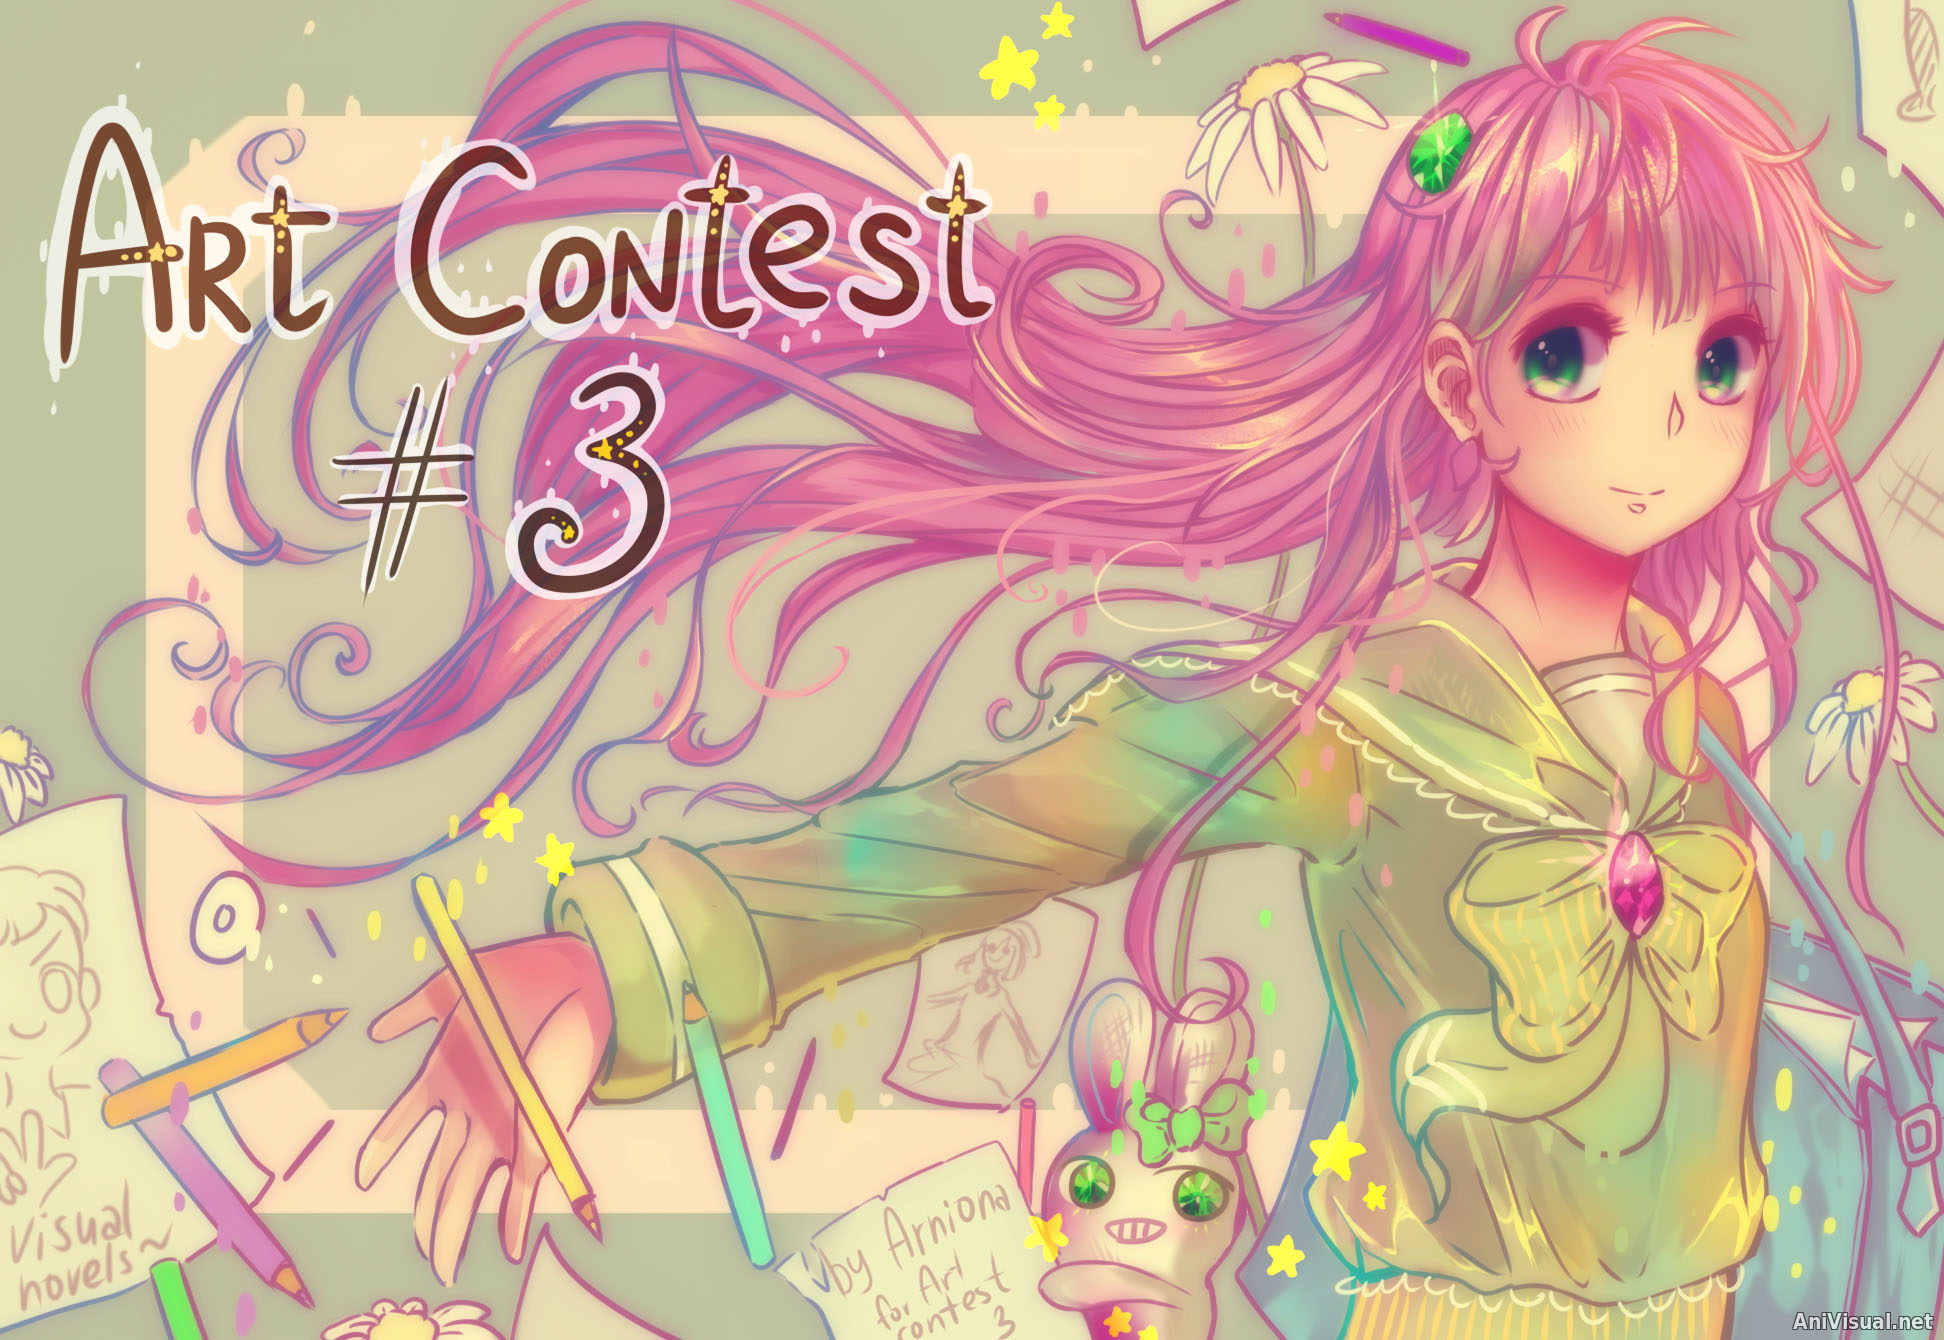 Art Contest #3 начинается!